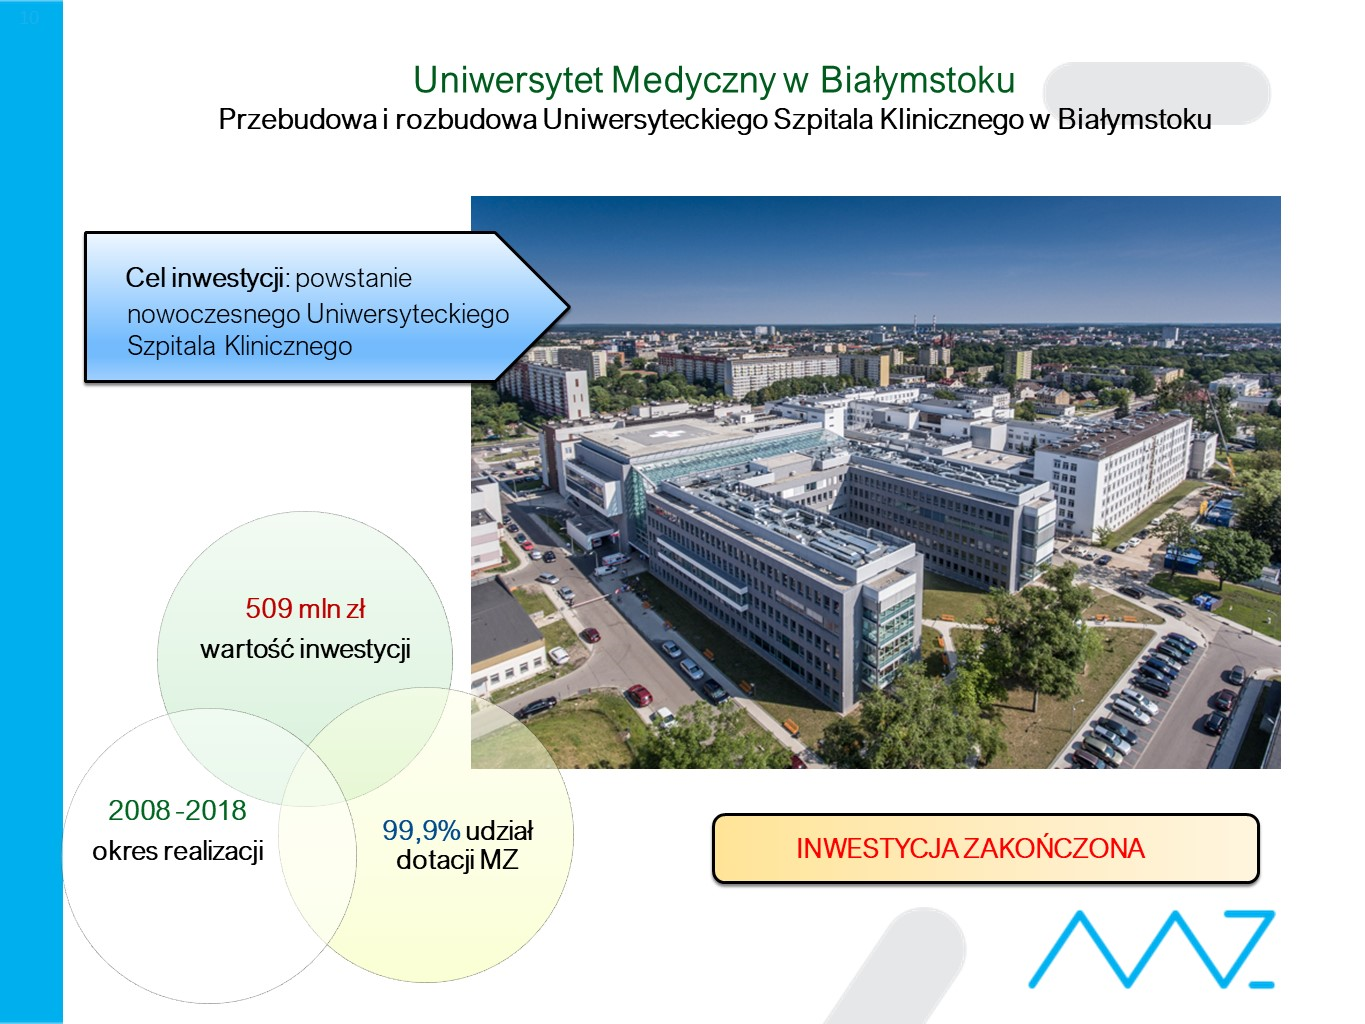 Przebudowa i Rozbudowa Uniwersyteckiego Szpitala Klinicznego Uniwersytetu Medycznego w Białymstoku